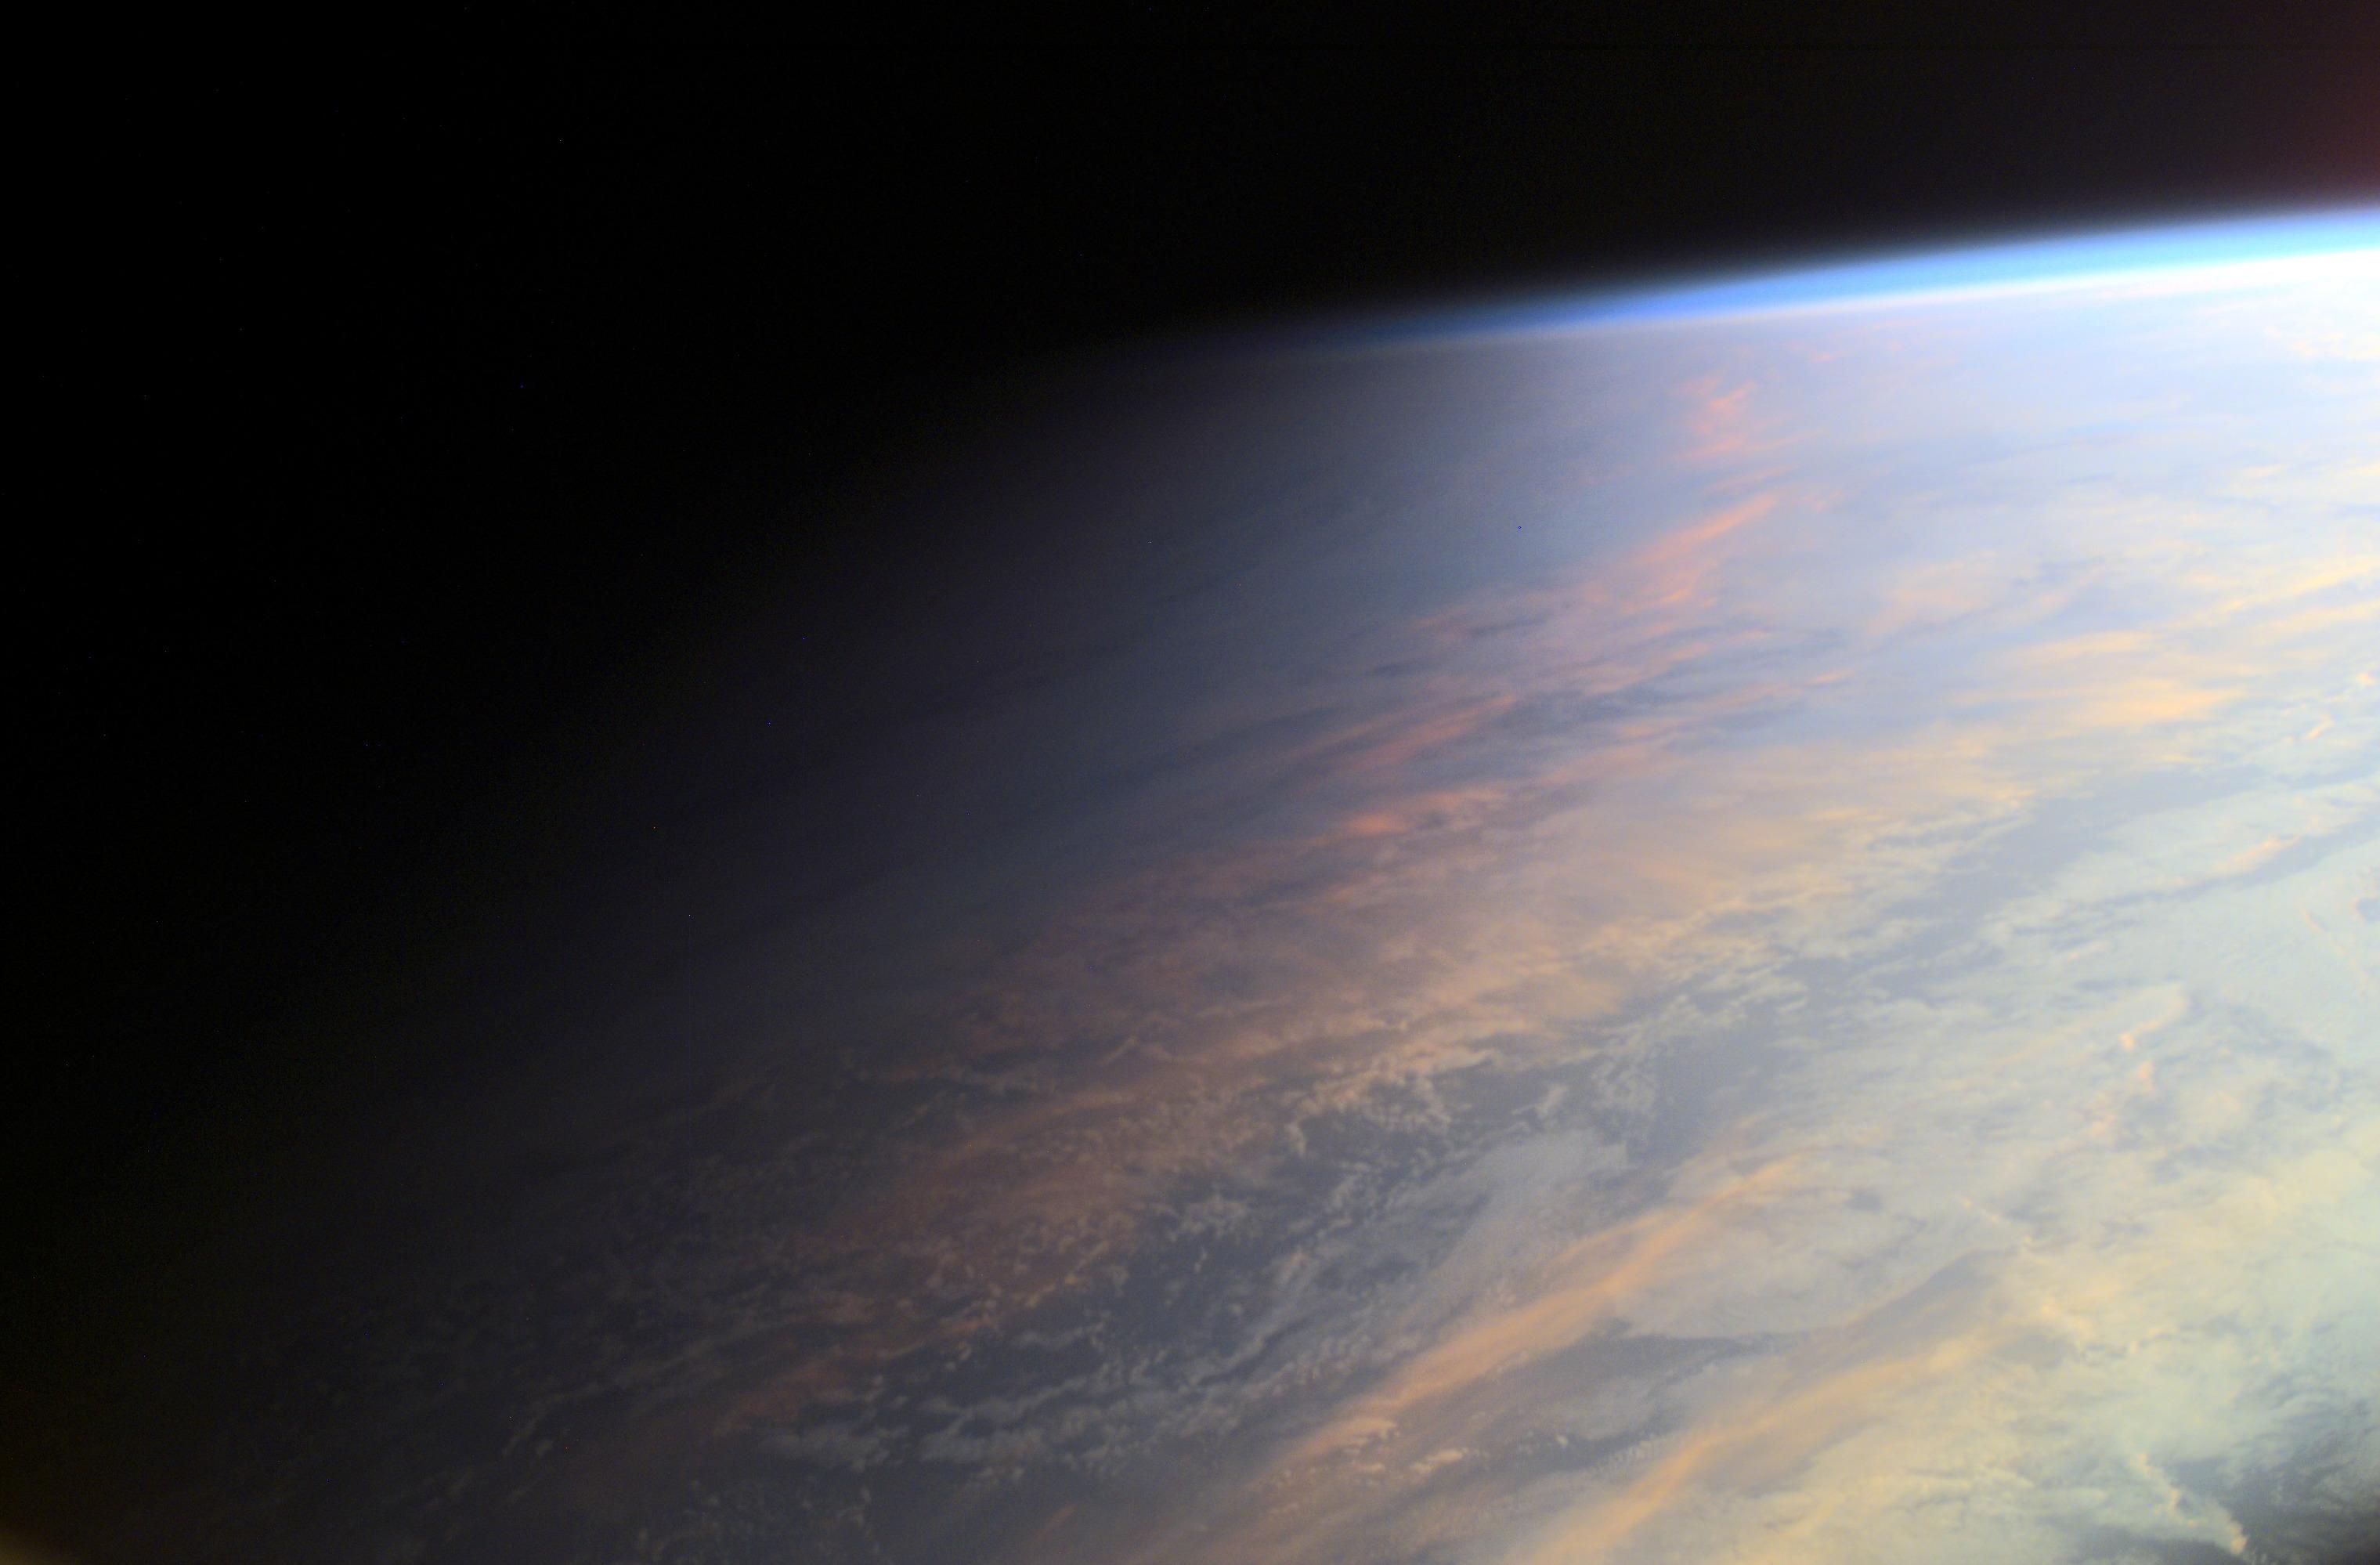 صورة لجزء من الأرض من محطّة الفضاء الدولية يظهر فيها التدرّج بين النهار والليل فوق المحيط، حيث تظهر بعض السحب والتي يعكس بعضها ضوء الشمس المحمرّ، كما تظهر طبقة واضحة عالية الإرتفاع على امتداد الحافّة العليا للجانب النهاري، تقوم بتشتيت ضوء الشمس الأزرق وتتلاشى في سواد الفضاء الغامر.